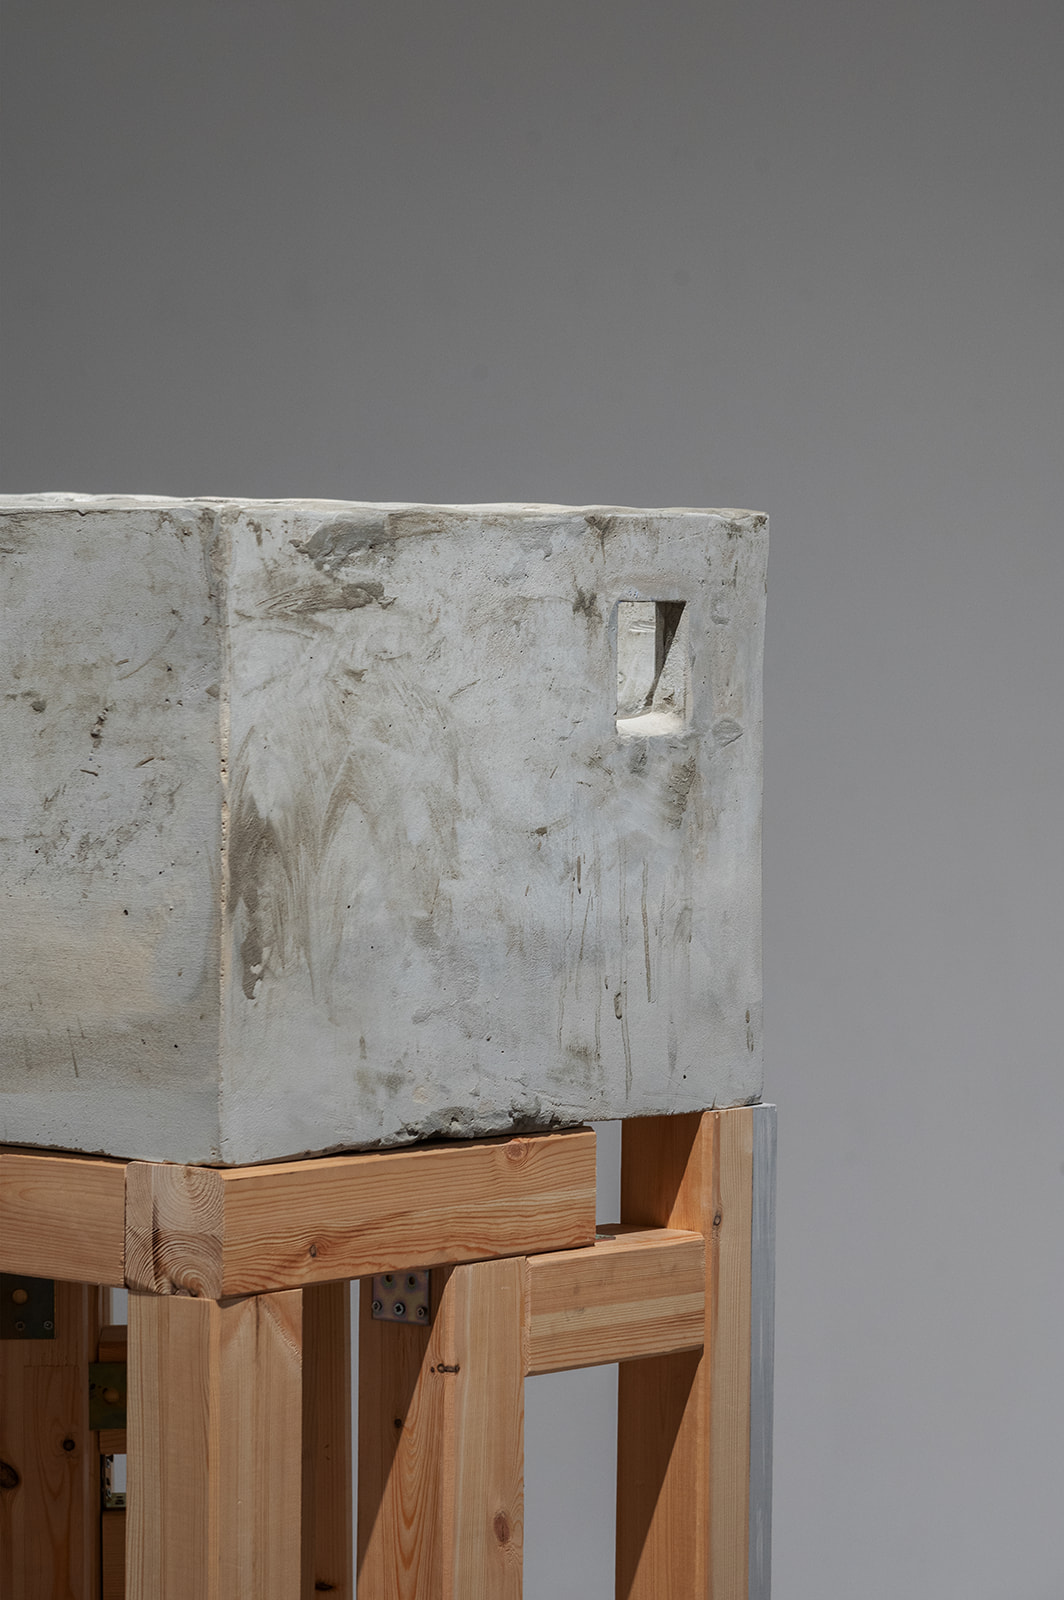 מינה ריינגולד, הבל, 2022, בטון, מתכת, עץ וקרמיקה<br />
צילום: קירה קלצקי